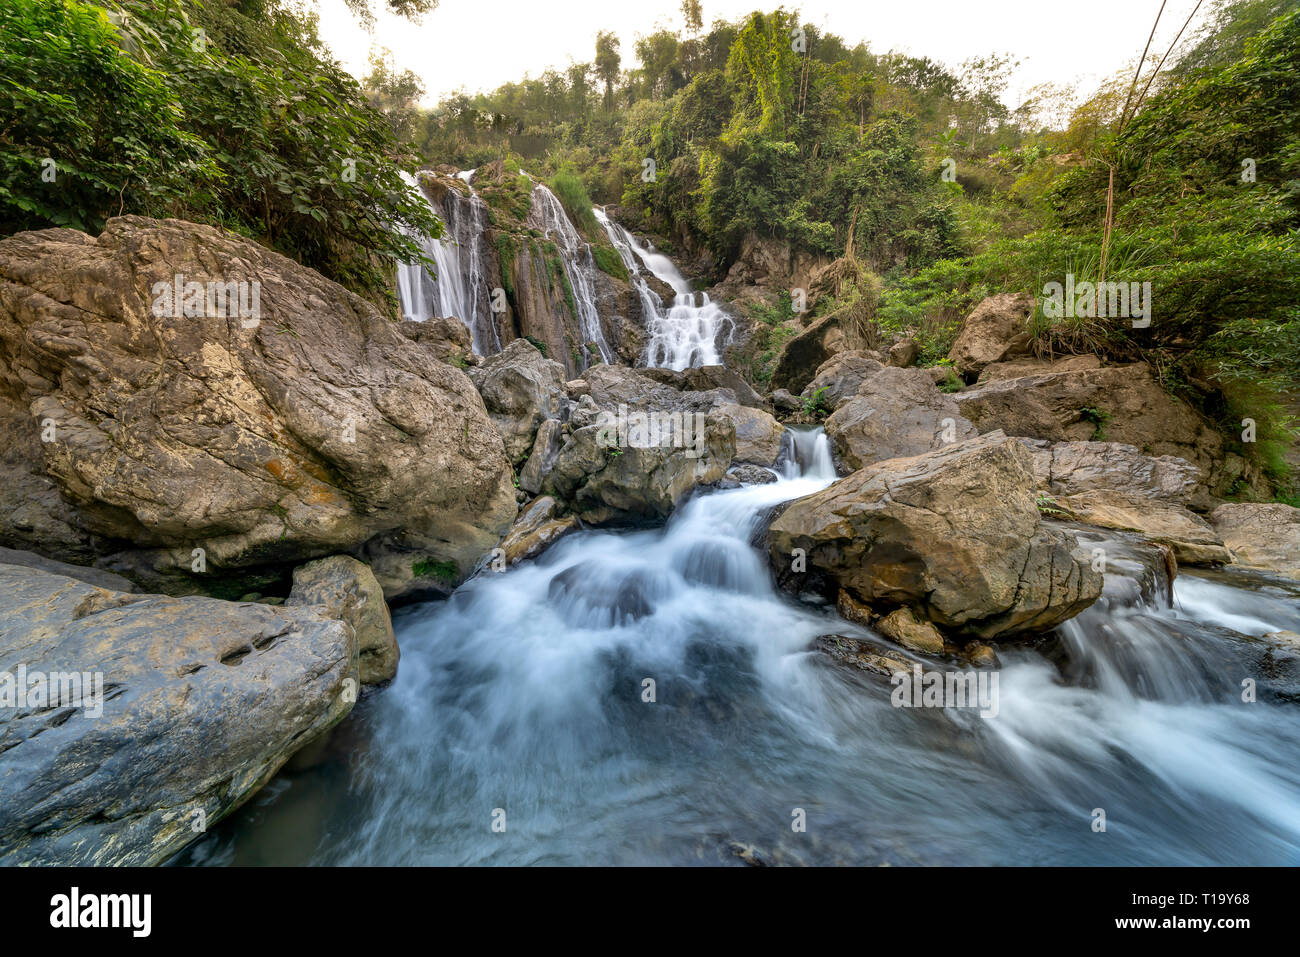 Go Lao waterfall, Mai Chau district, Hoa Binh province, Vietnam - January 4, 2019: The beauty of Go Lao waterfall in Mai Chau district, Hoa Binh provi Stock Photo